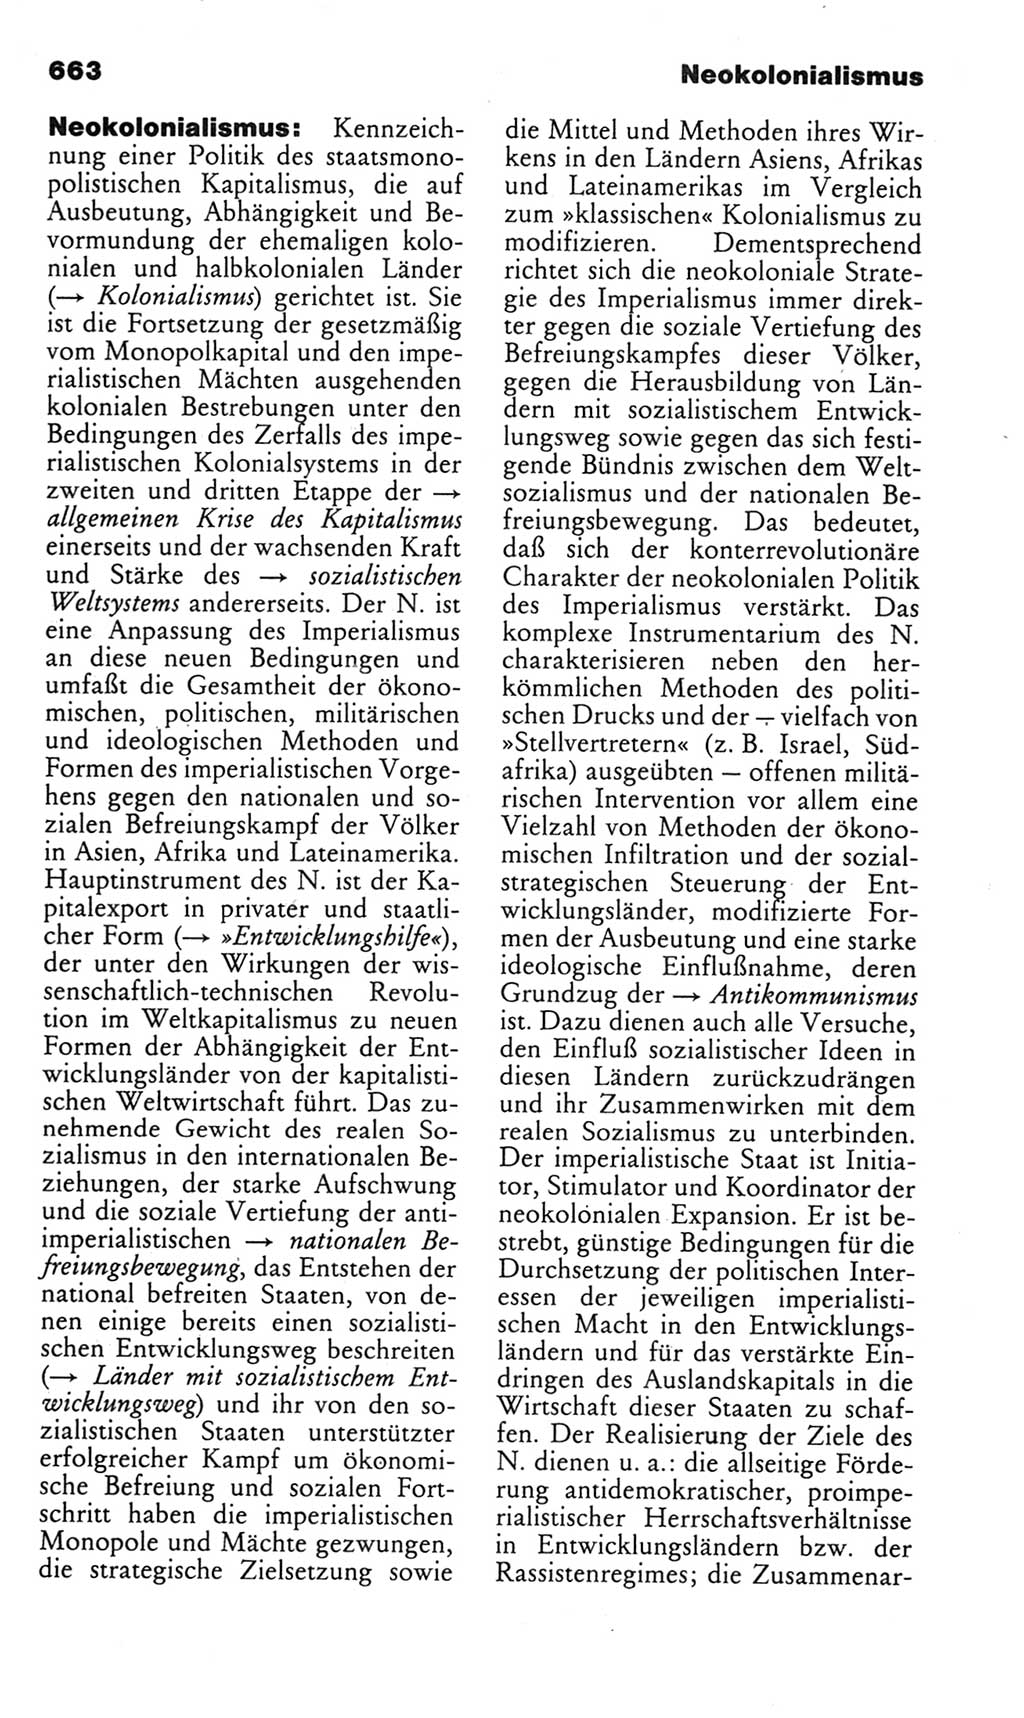 Kleines politisches Wörterbuch [Deutsche Demokratische Republik (DDR)] 1985, Seite 663 (Kl. pol. Wb. DDR 1985, S. 663)